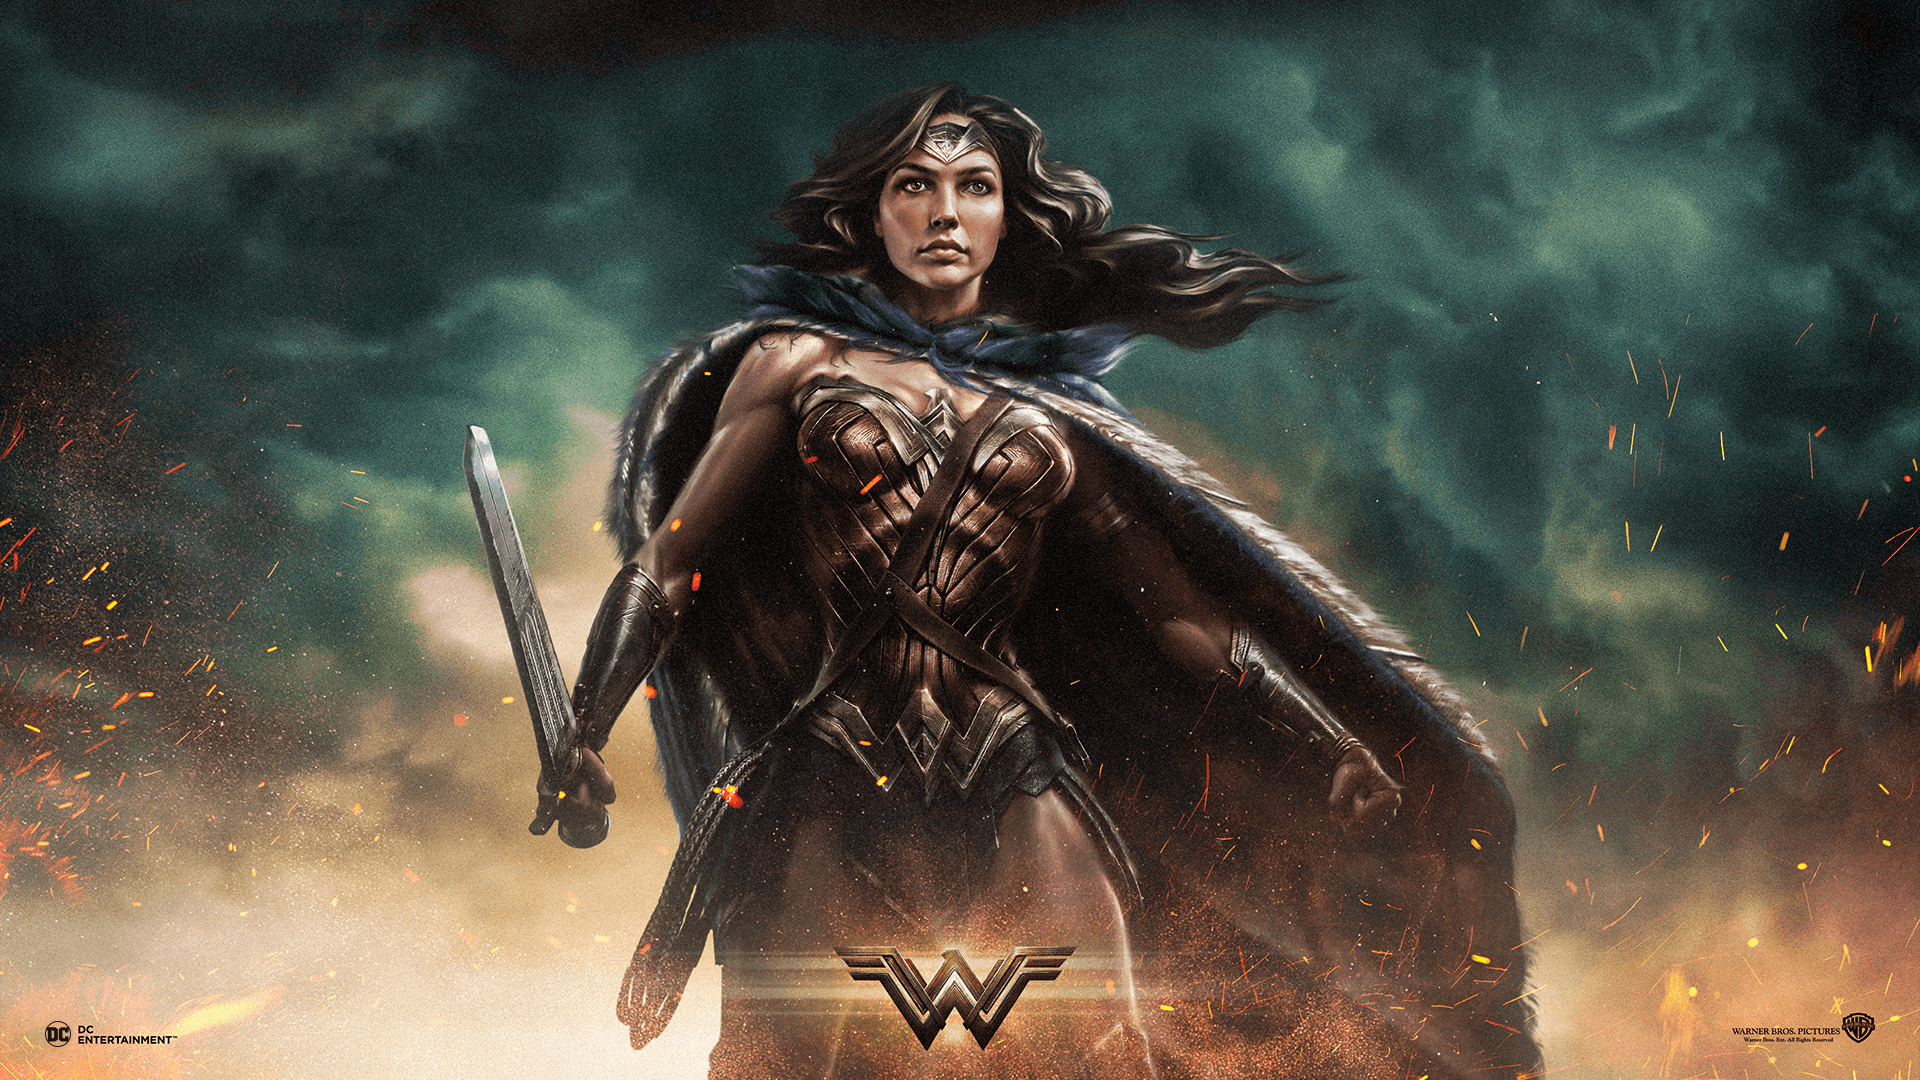 Wonder Woman Wallpaper. Superman Wonder Woman Wallpaper, Wonder Woman Wallpaper and Stevie Wonder Wallpaper